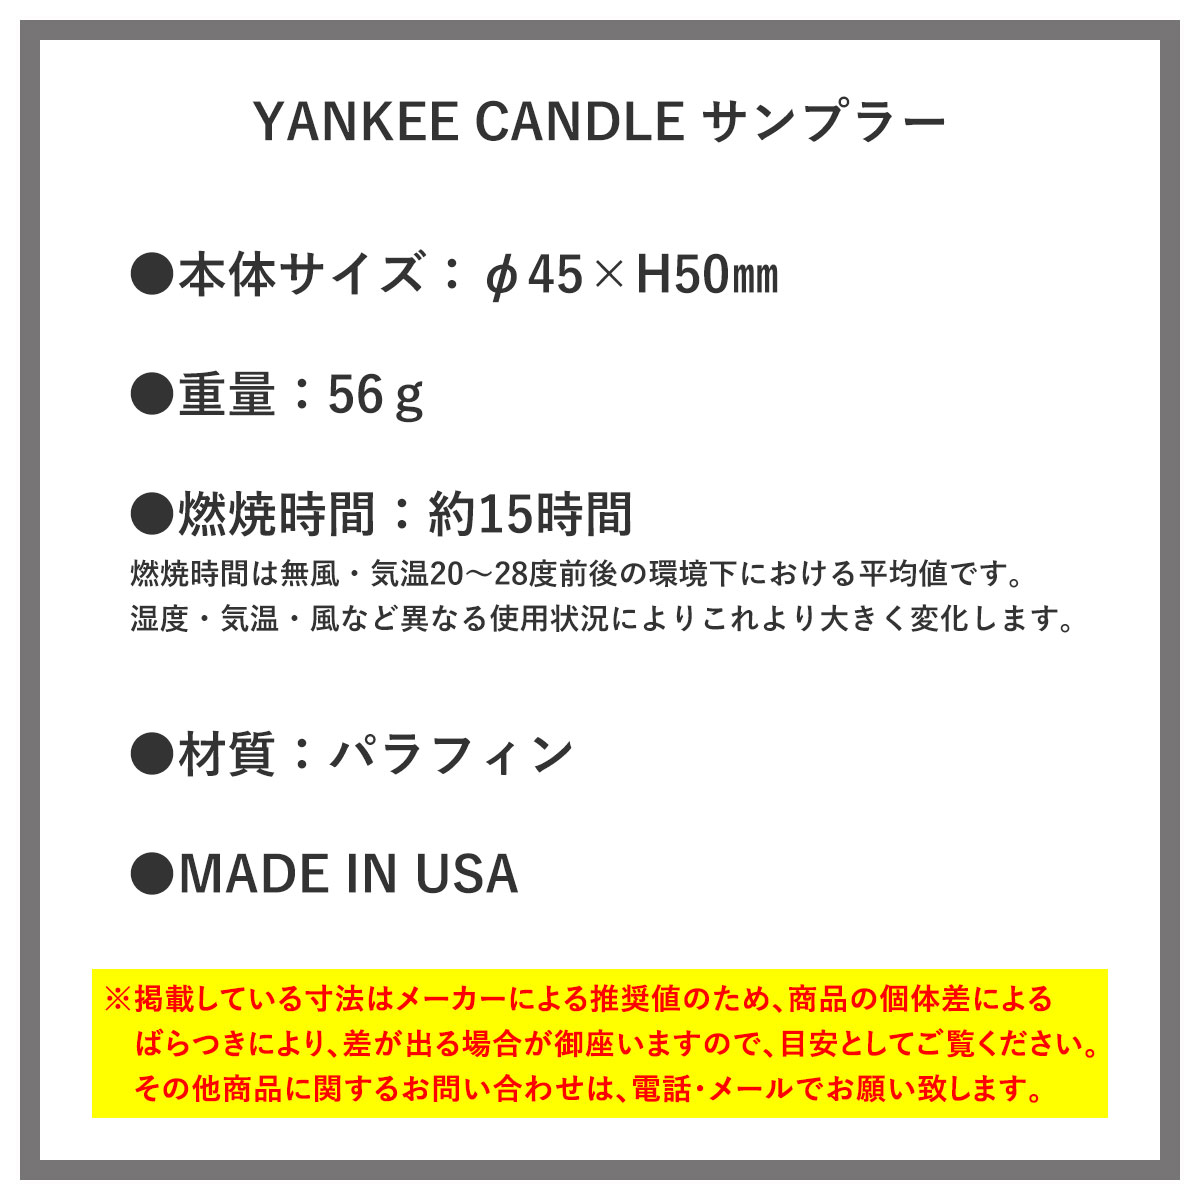 ヤンキーキャンドル YANKEE CANDLE 正規販売店 キャンドル YCｻﾝﾌﾟﾗｰ ﾚﾓﾝﾗﾍﾞﾝﾀﾞｰ (K0010530)